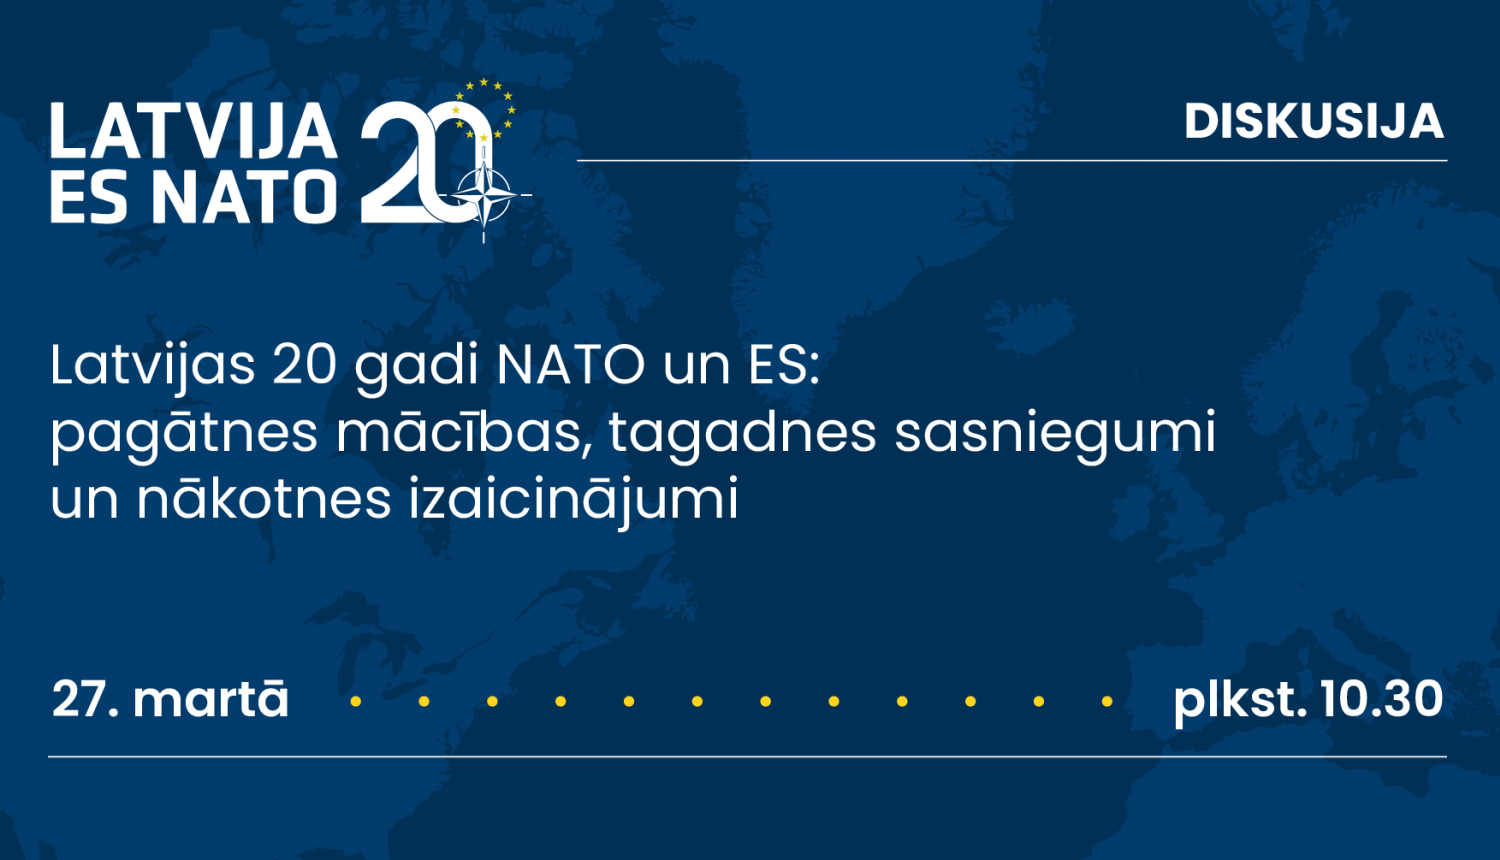 Diskusija “Latvijas 20 gadi NATO un ES pagātnes mācības, tagadnes sasniegumi un nākotnes izaicinājumi”. 